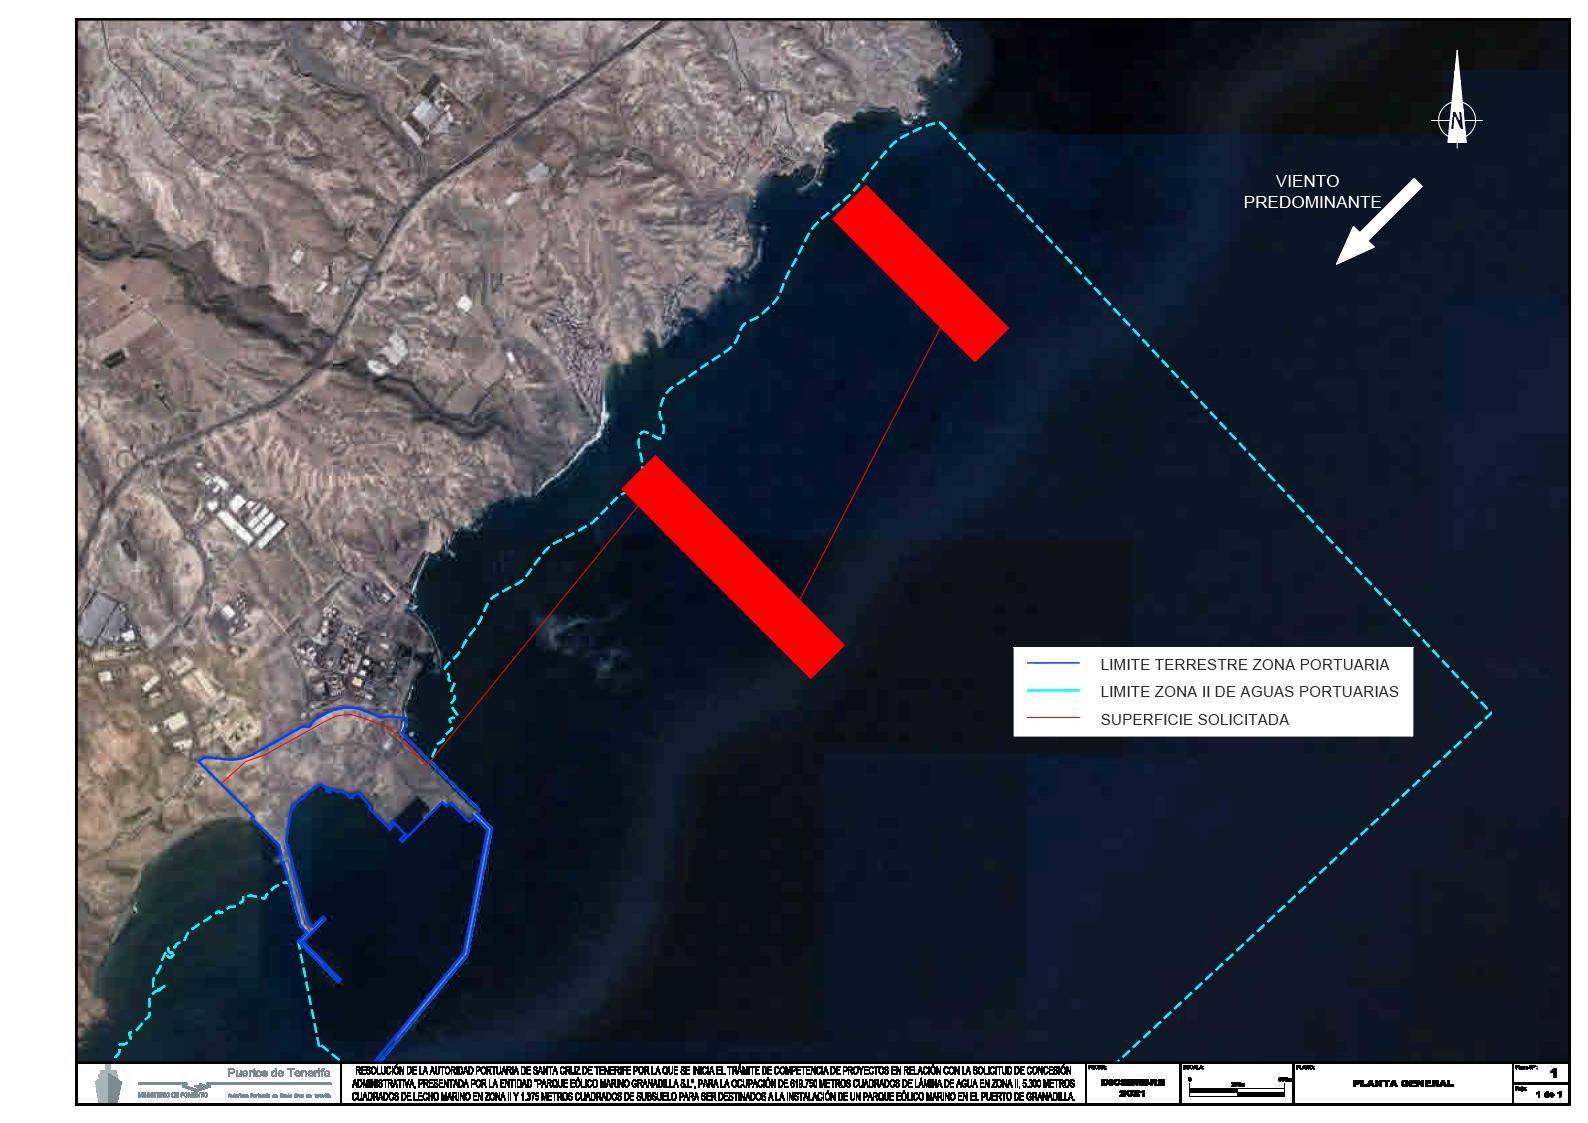 Este es el mapa del proyecto de parque eólico marino que se pretende instalar frente a las costas del sur de Tenerife. Los aerogeneradores se instalarían en dos franjas de mar (pintadas de rojo en el mapa) frente a las localidades de Las Maretas y San Miguel de Tajao, pertenecientes al municipio de Arico. 